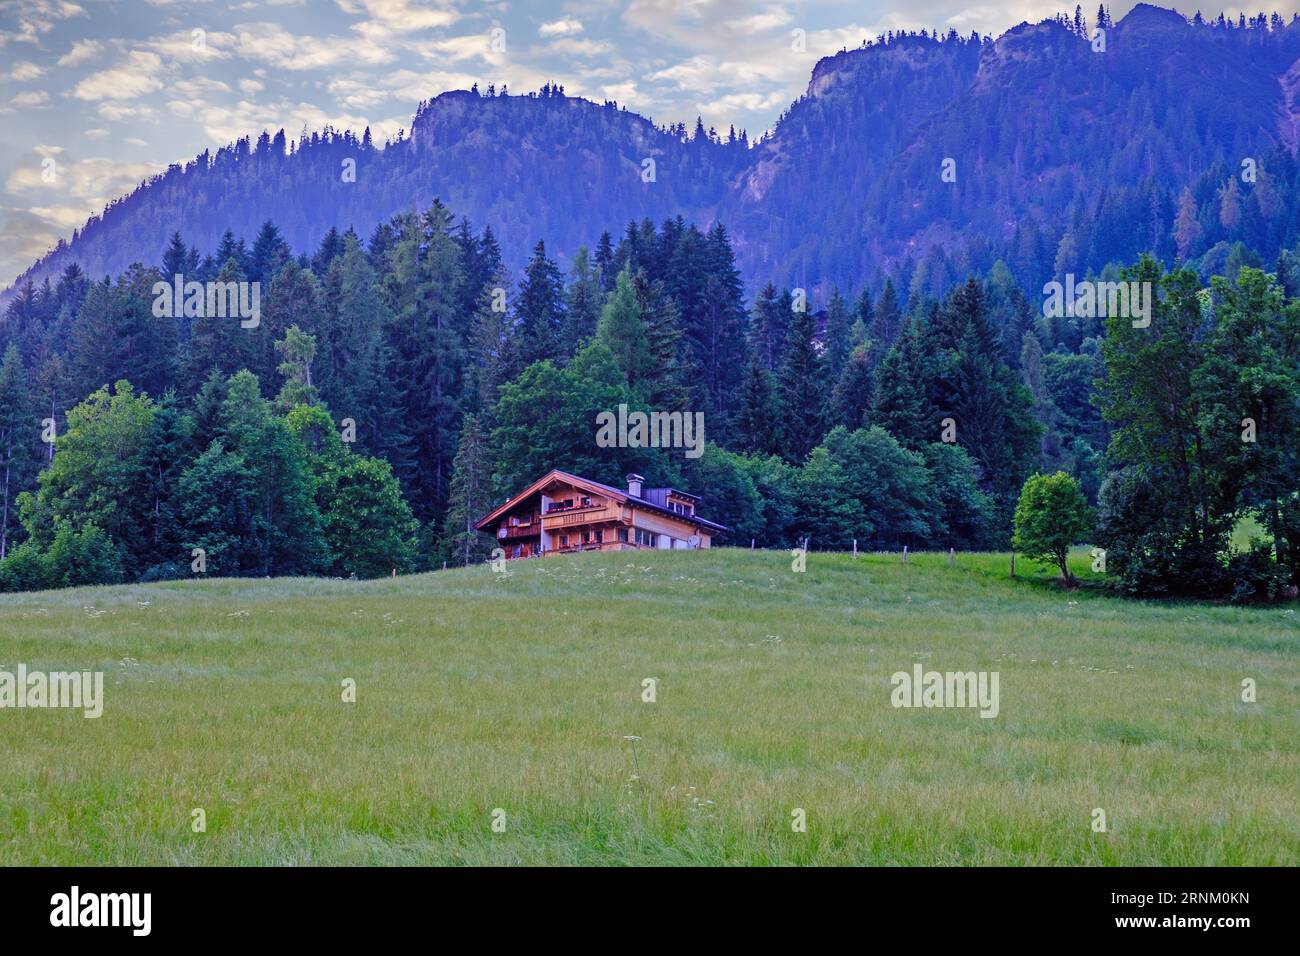 Casa alpina de madera tradicional en un campo con altos árboles y montañas. Alpbach, pueblo en Tirol, Austria Occidental. Foto de stock